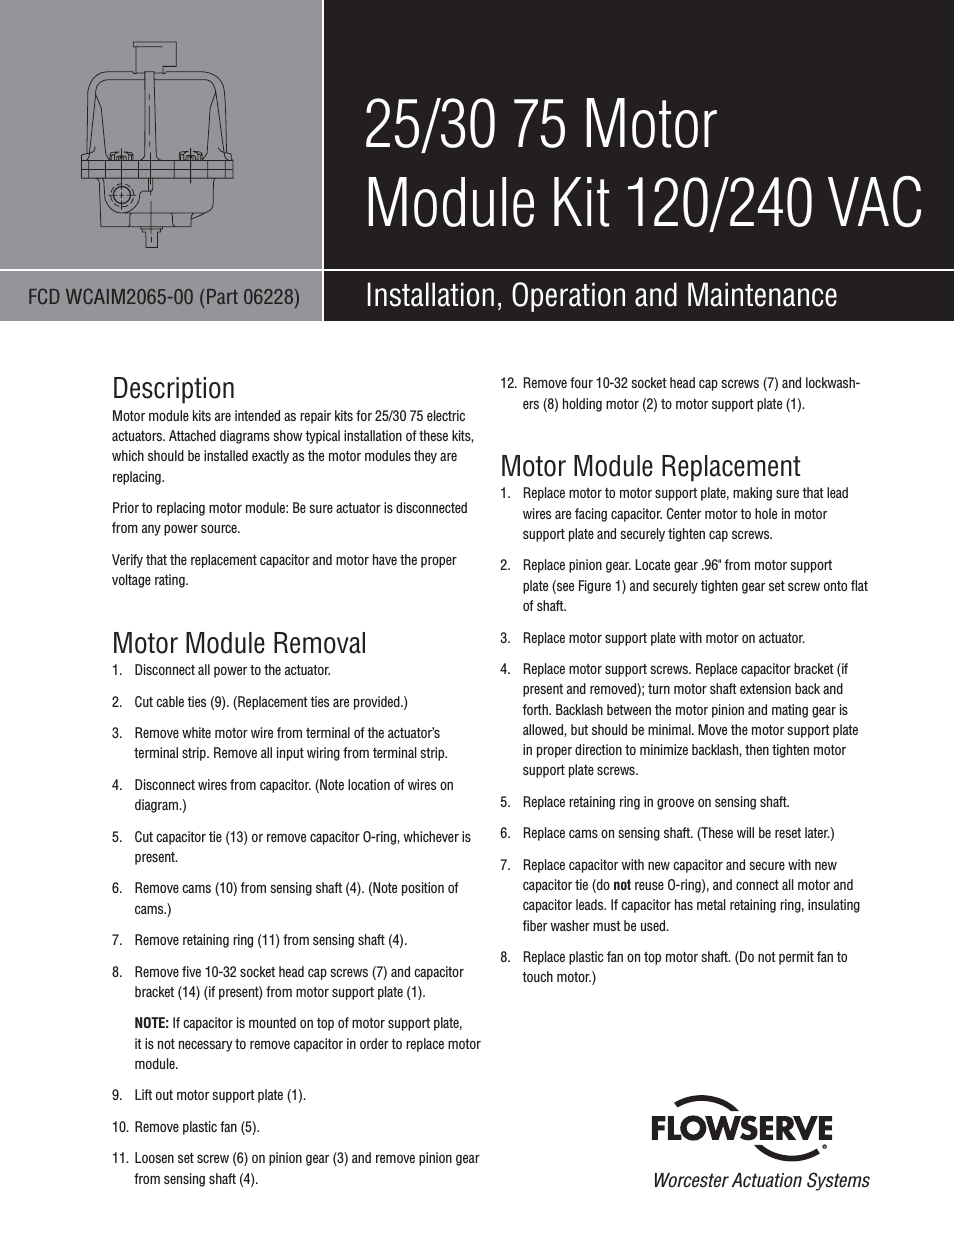 30 75 Motor Module Kit 120/240 VAC